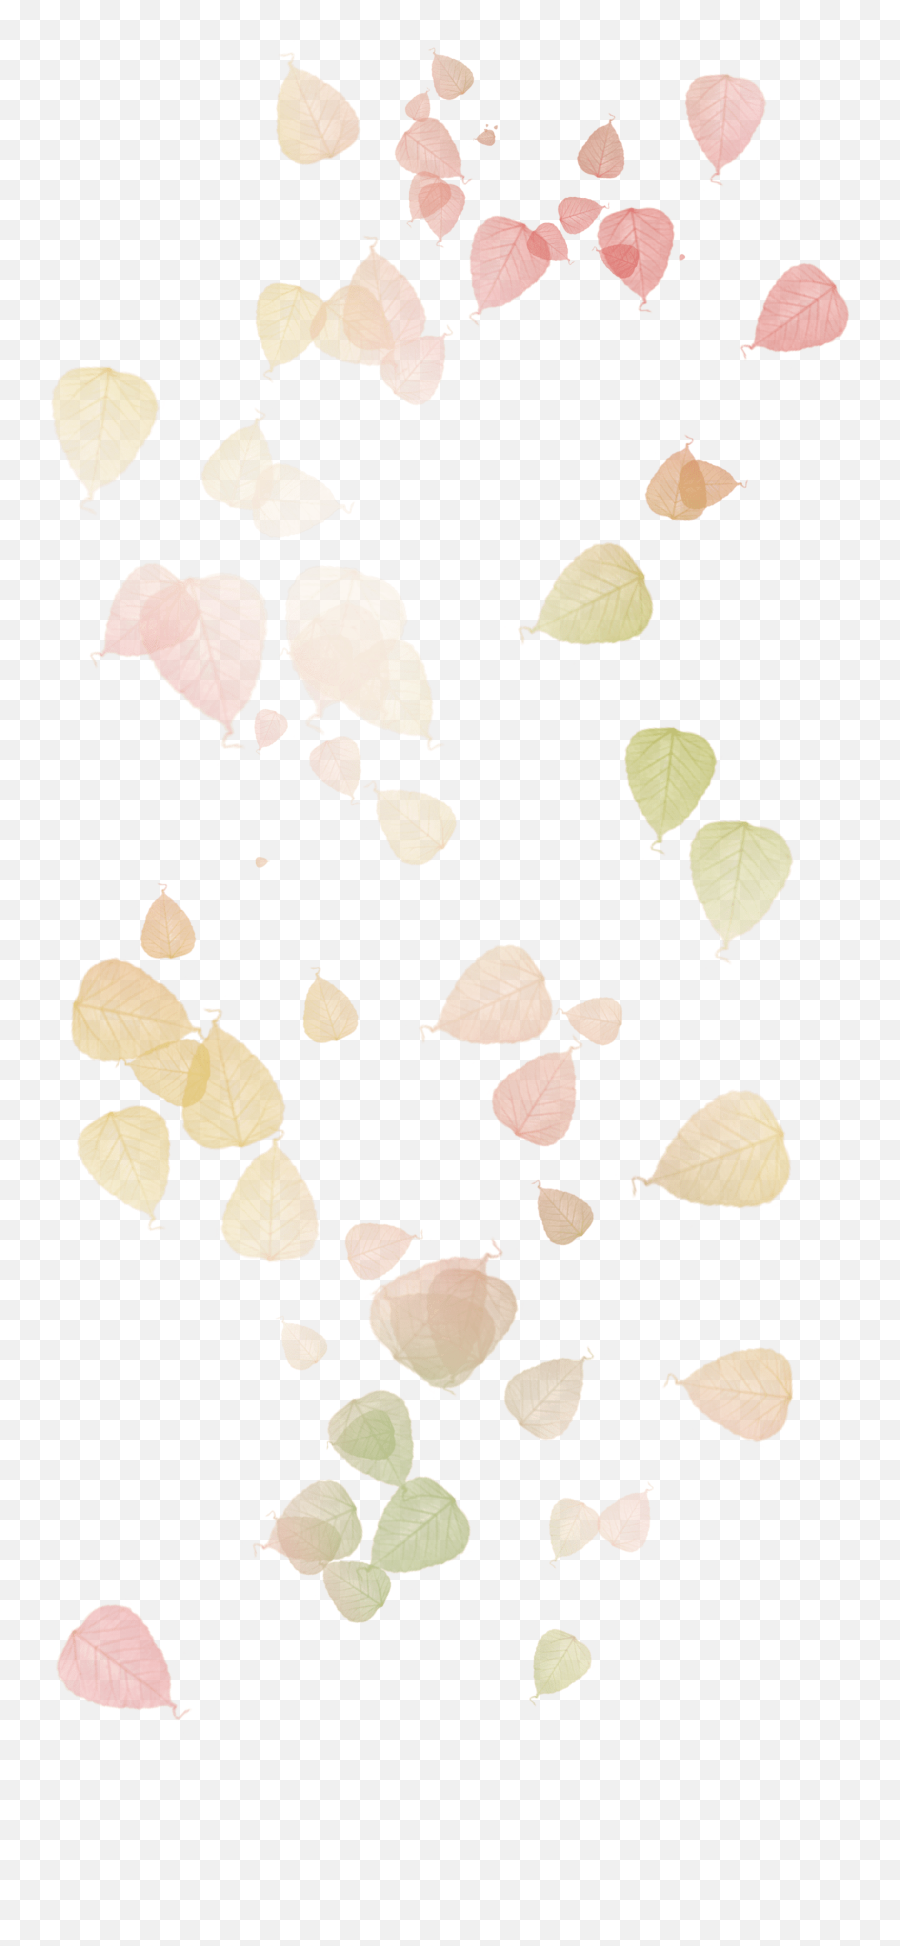 Autumn Leaves Leaf Watercolor Painting Watercolor Leaves Emoji,Leaf Falling Emoji